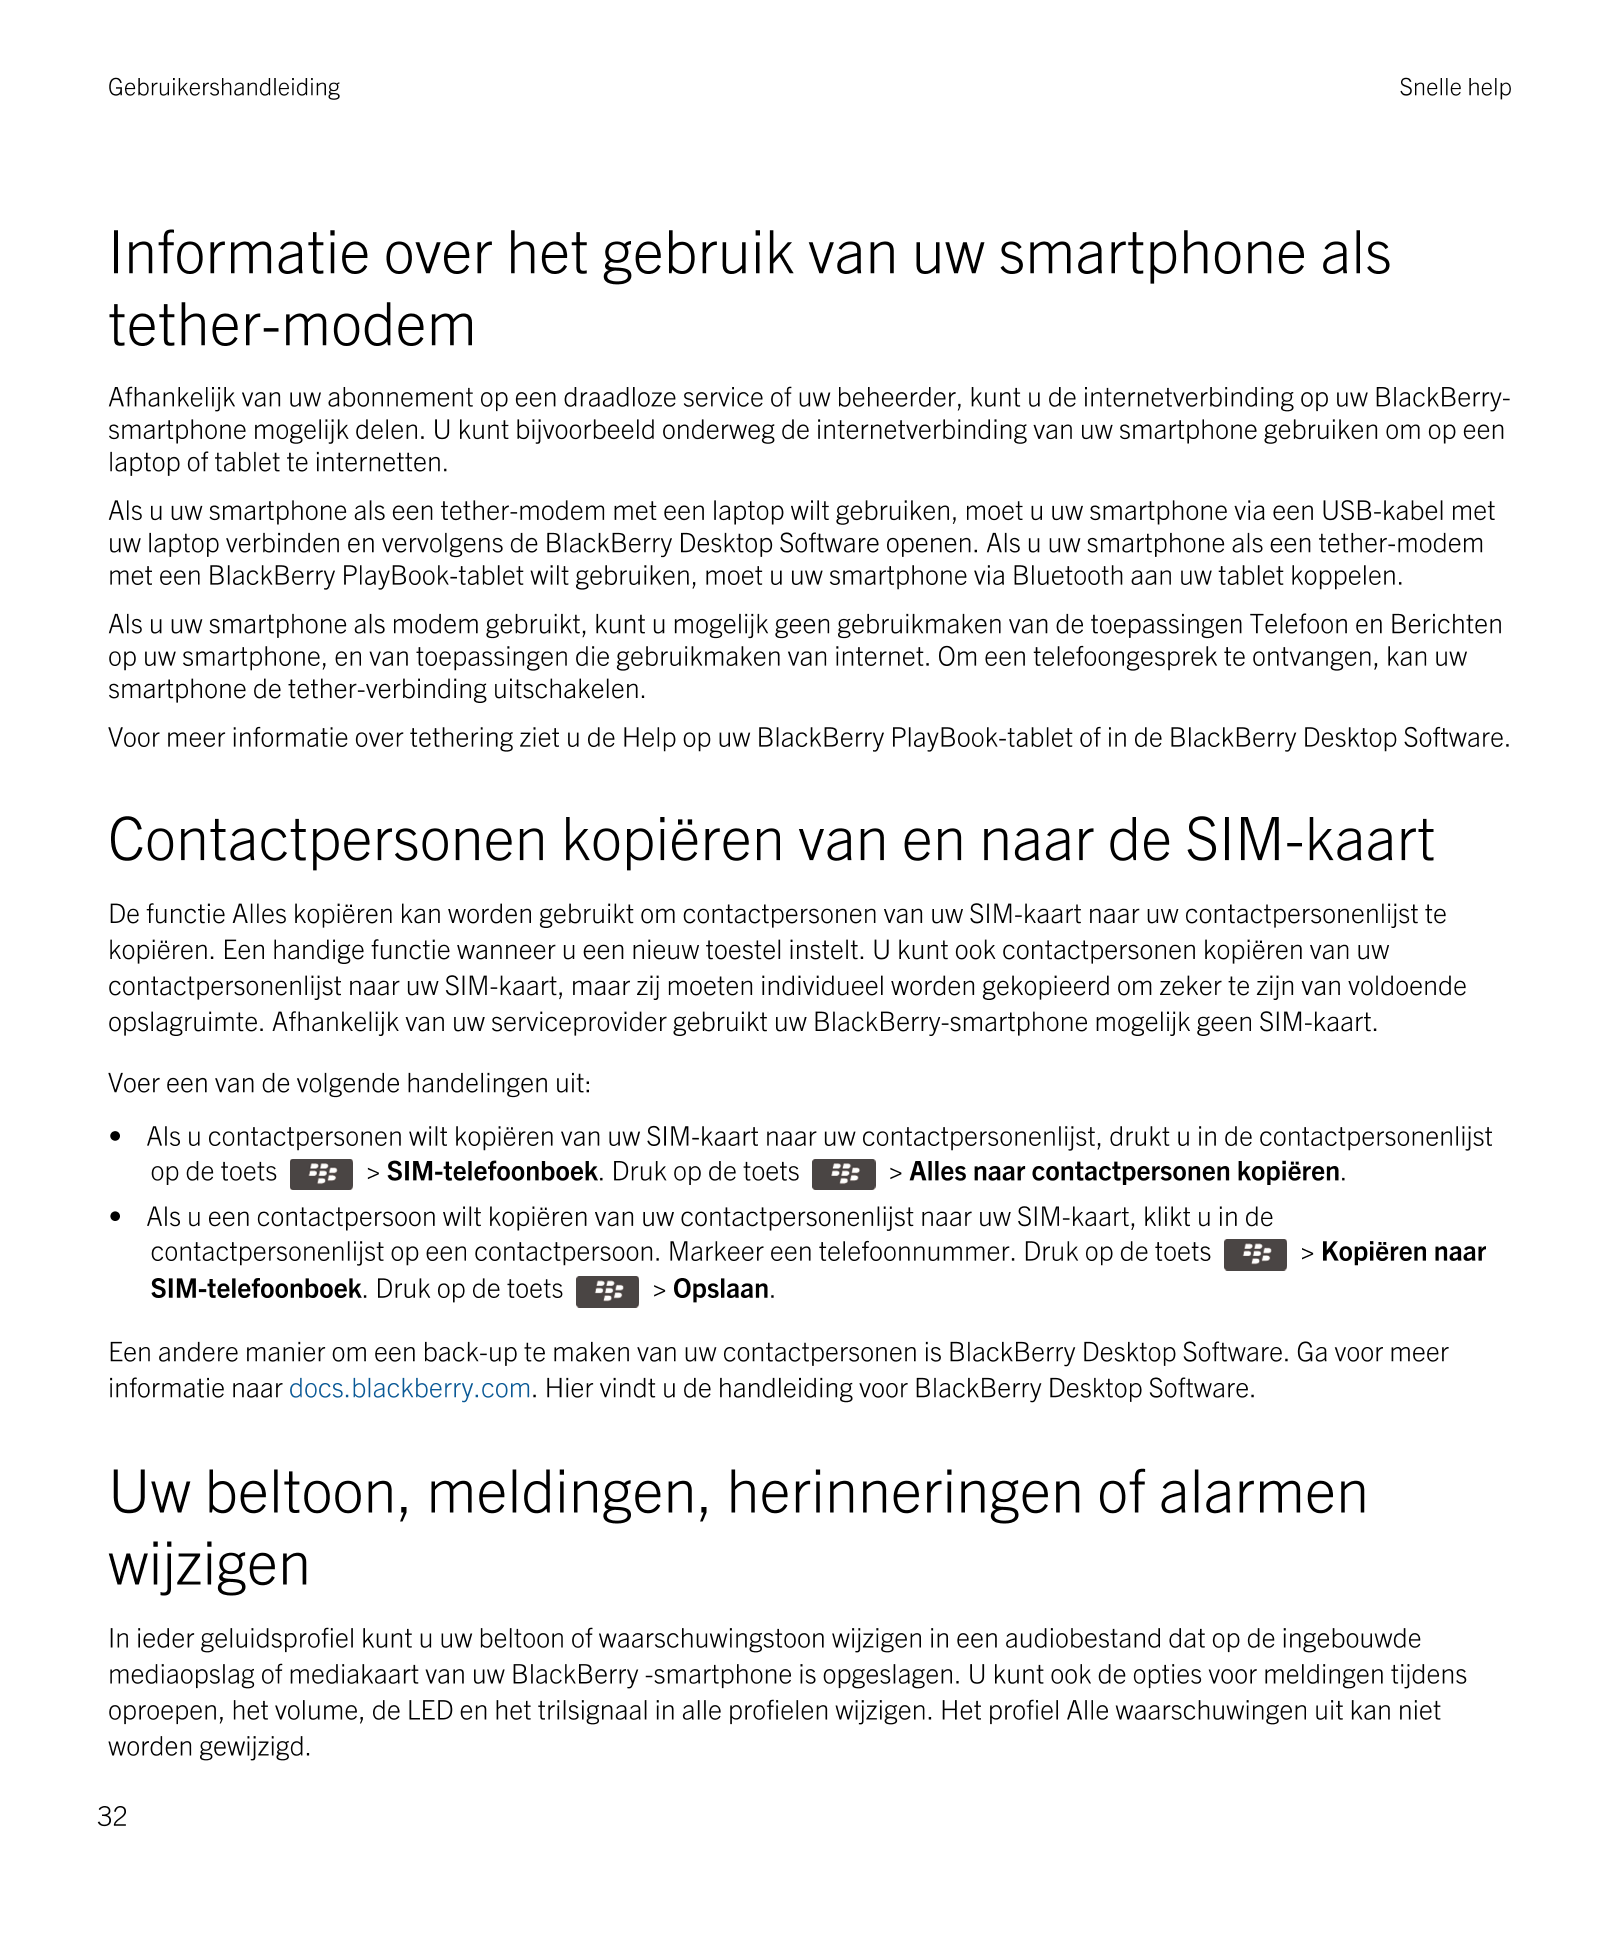 Gebruikershandleiding Snelle help
Informatie over het gebruik van uw smartphone als 
tether-modem
Afhankelijk van uw abonnement 